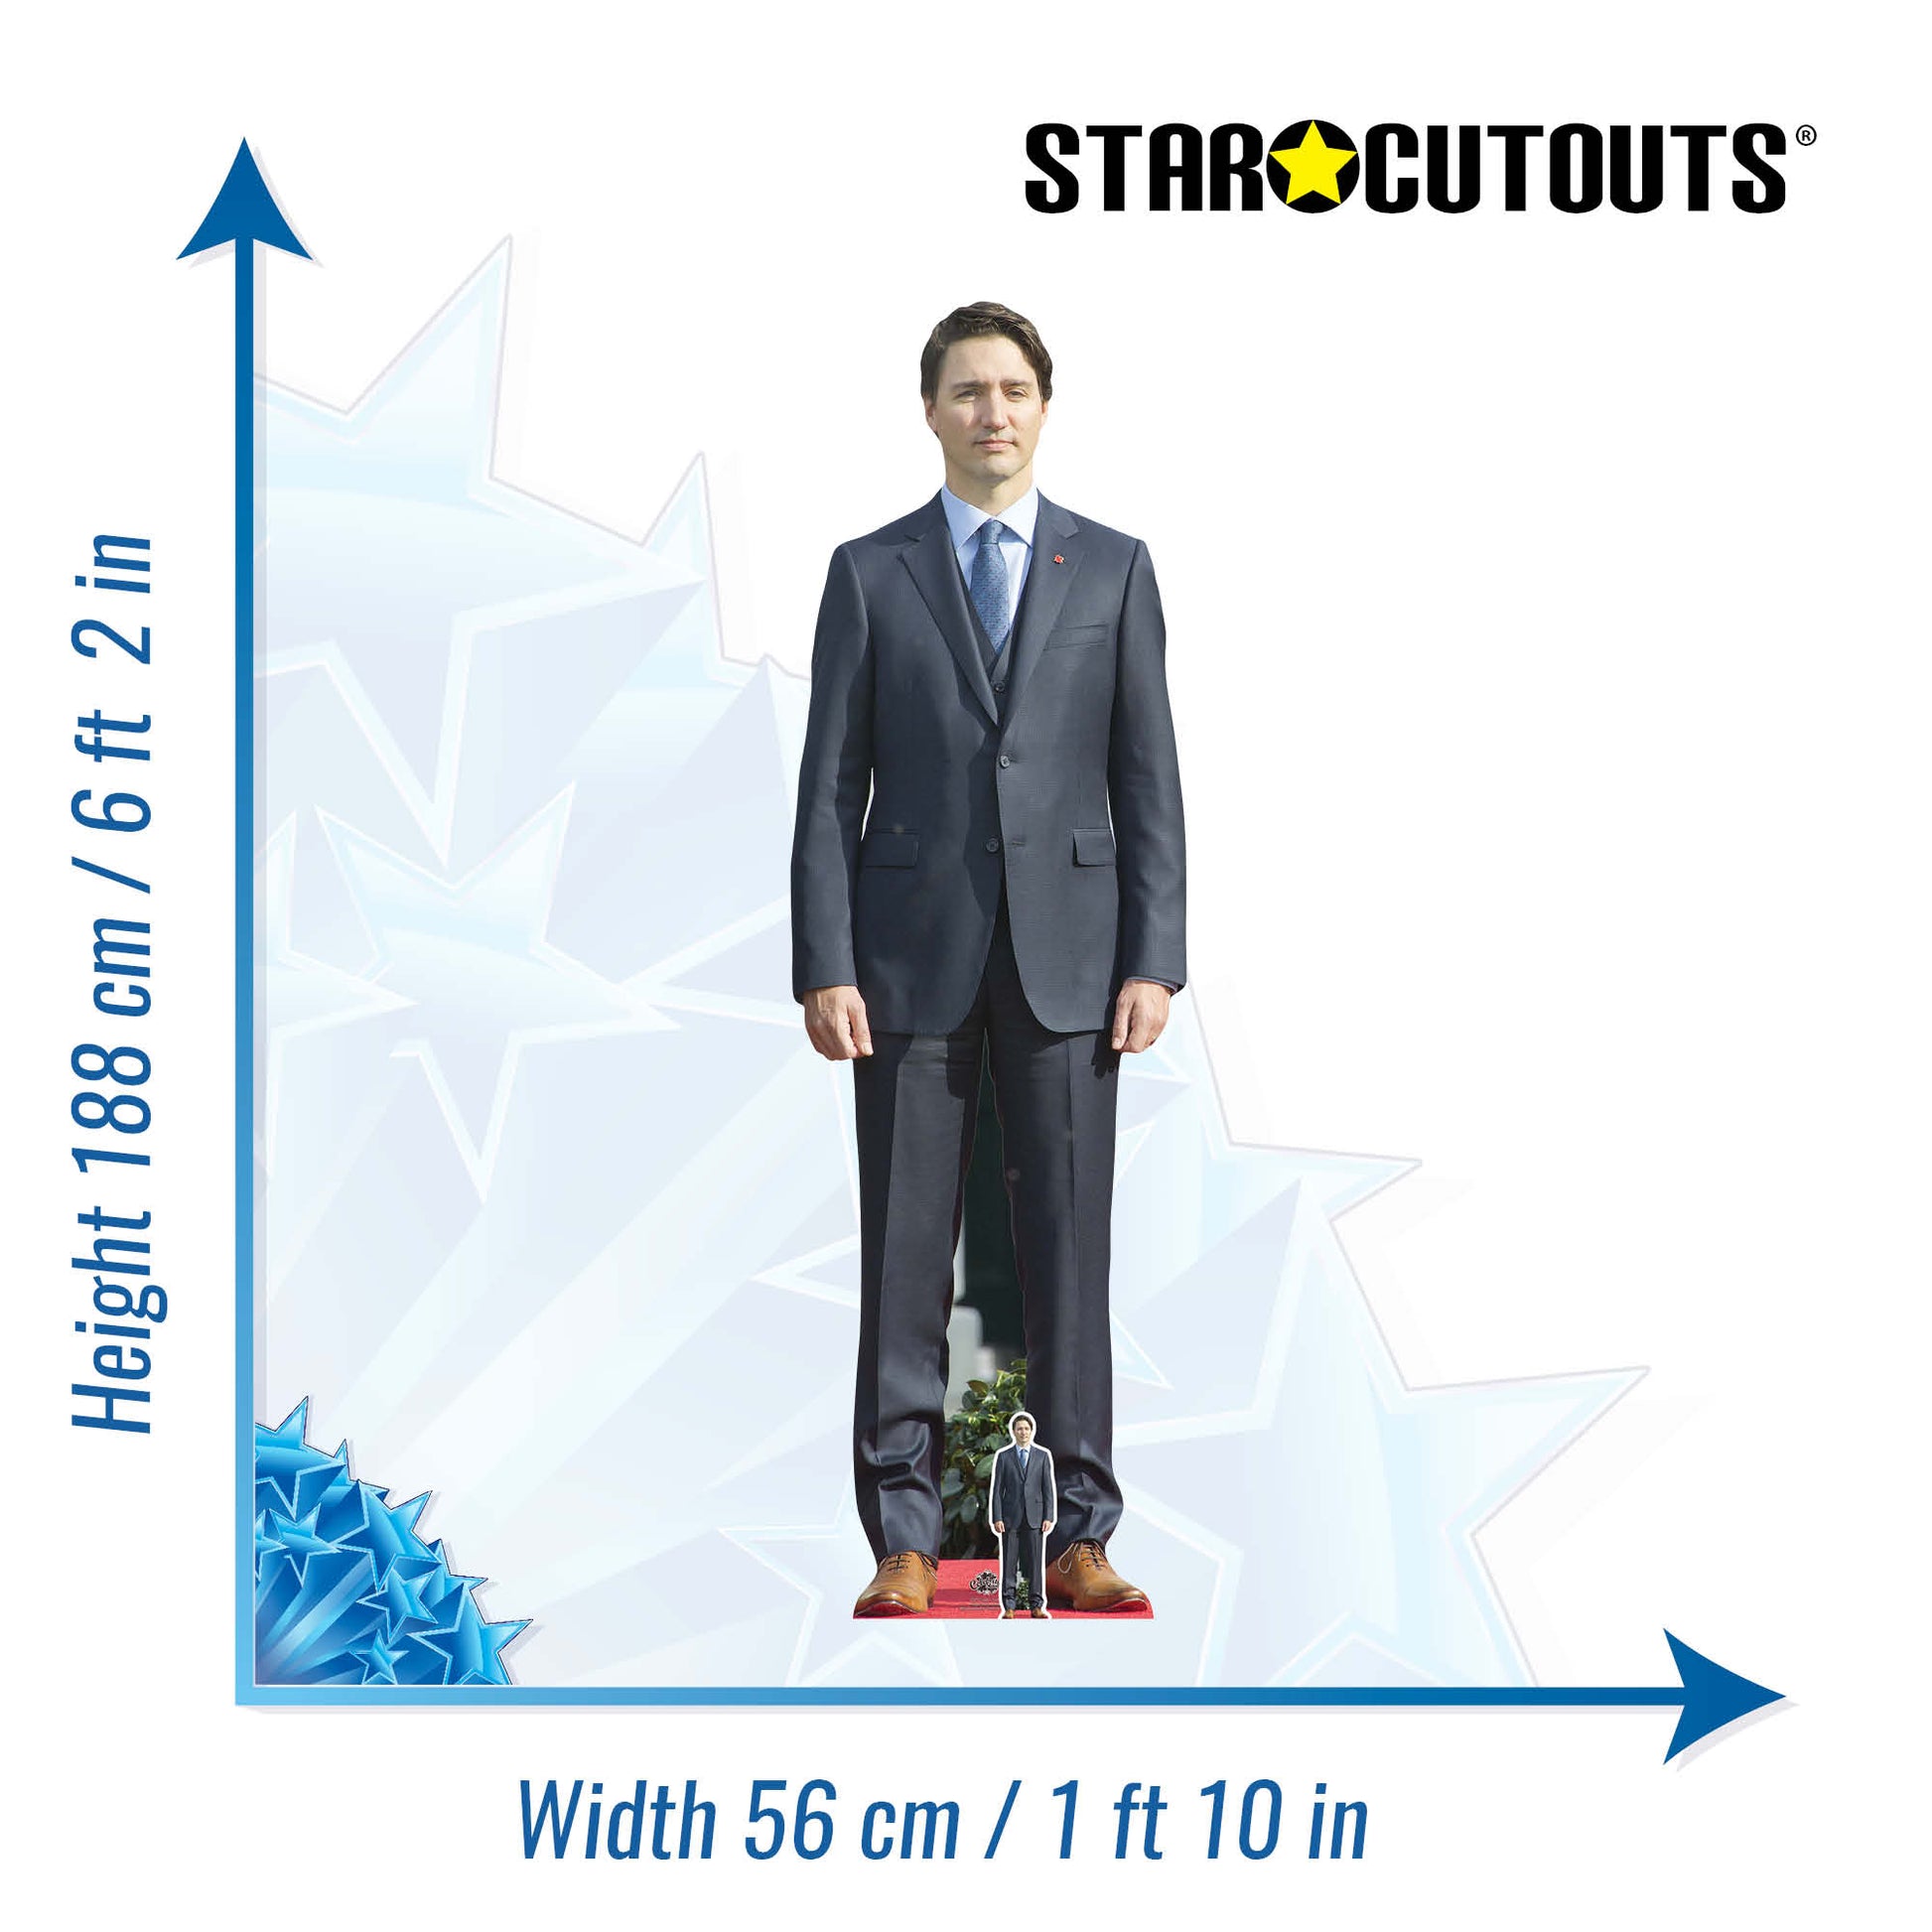 Justin Trudeau Cardboard Cutout Politician